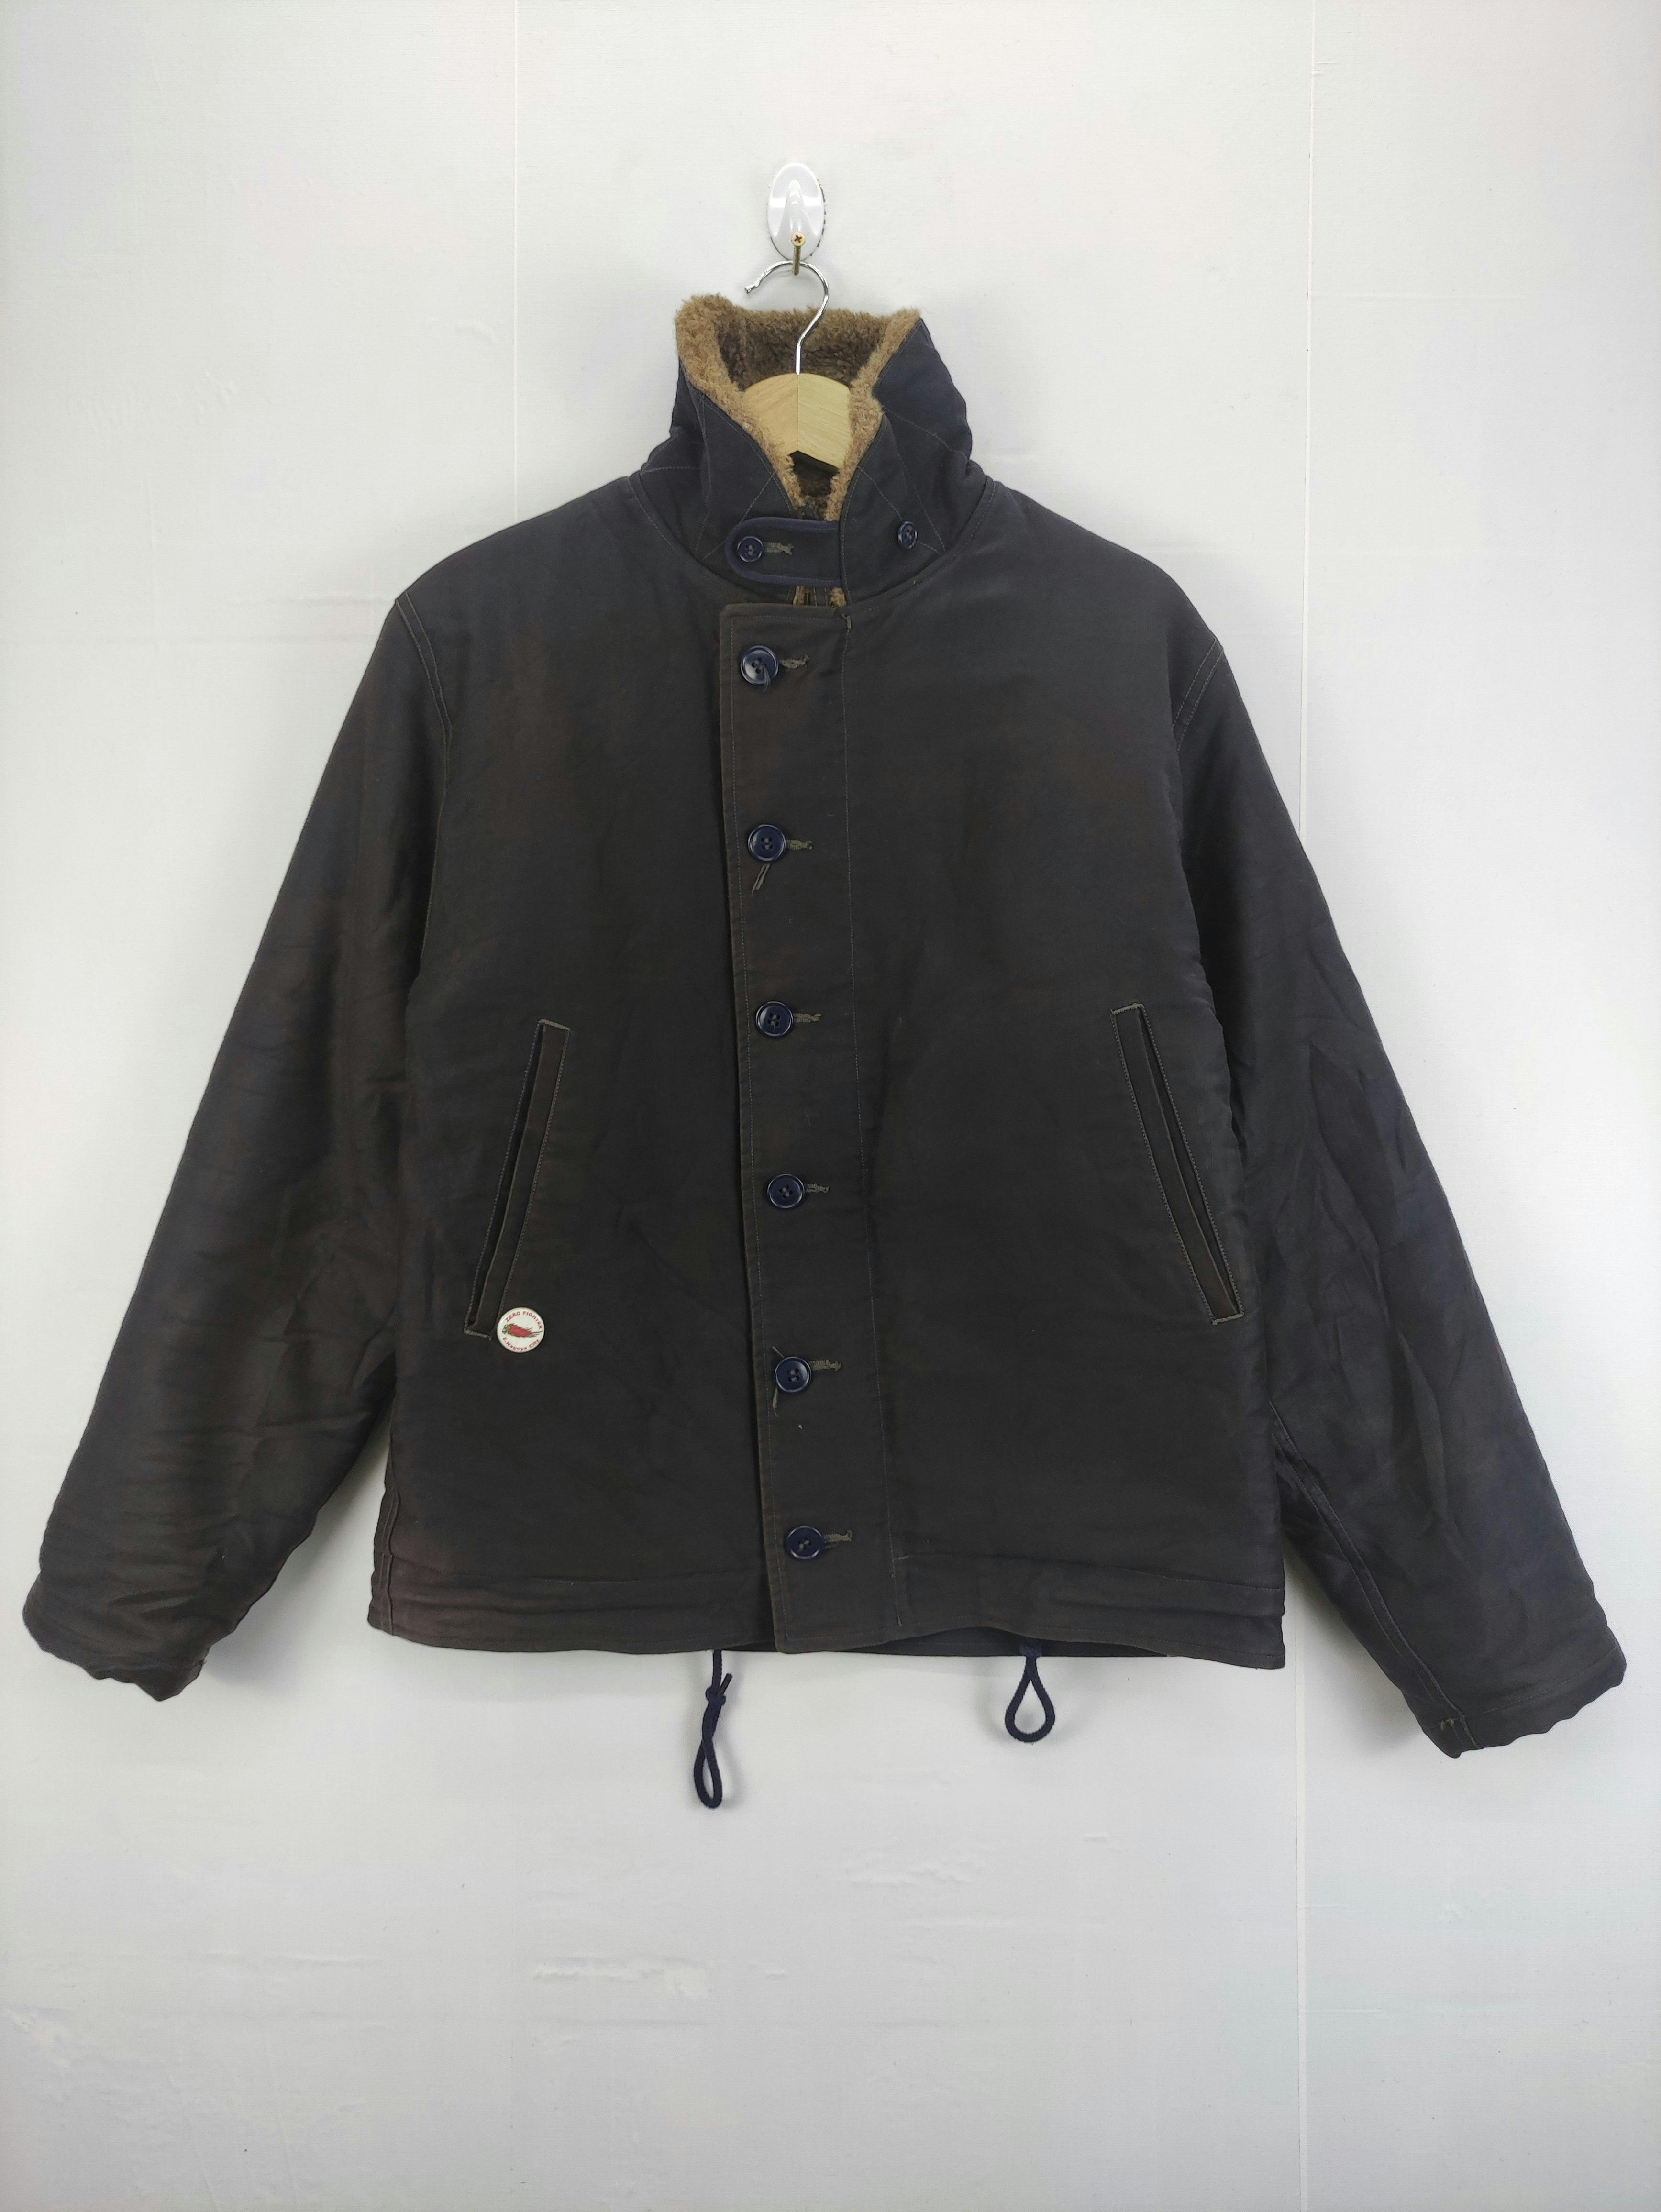 Vintage Ccm Military Zipper Jacket - 1